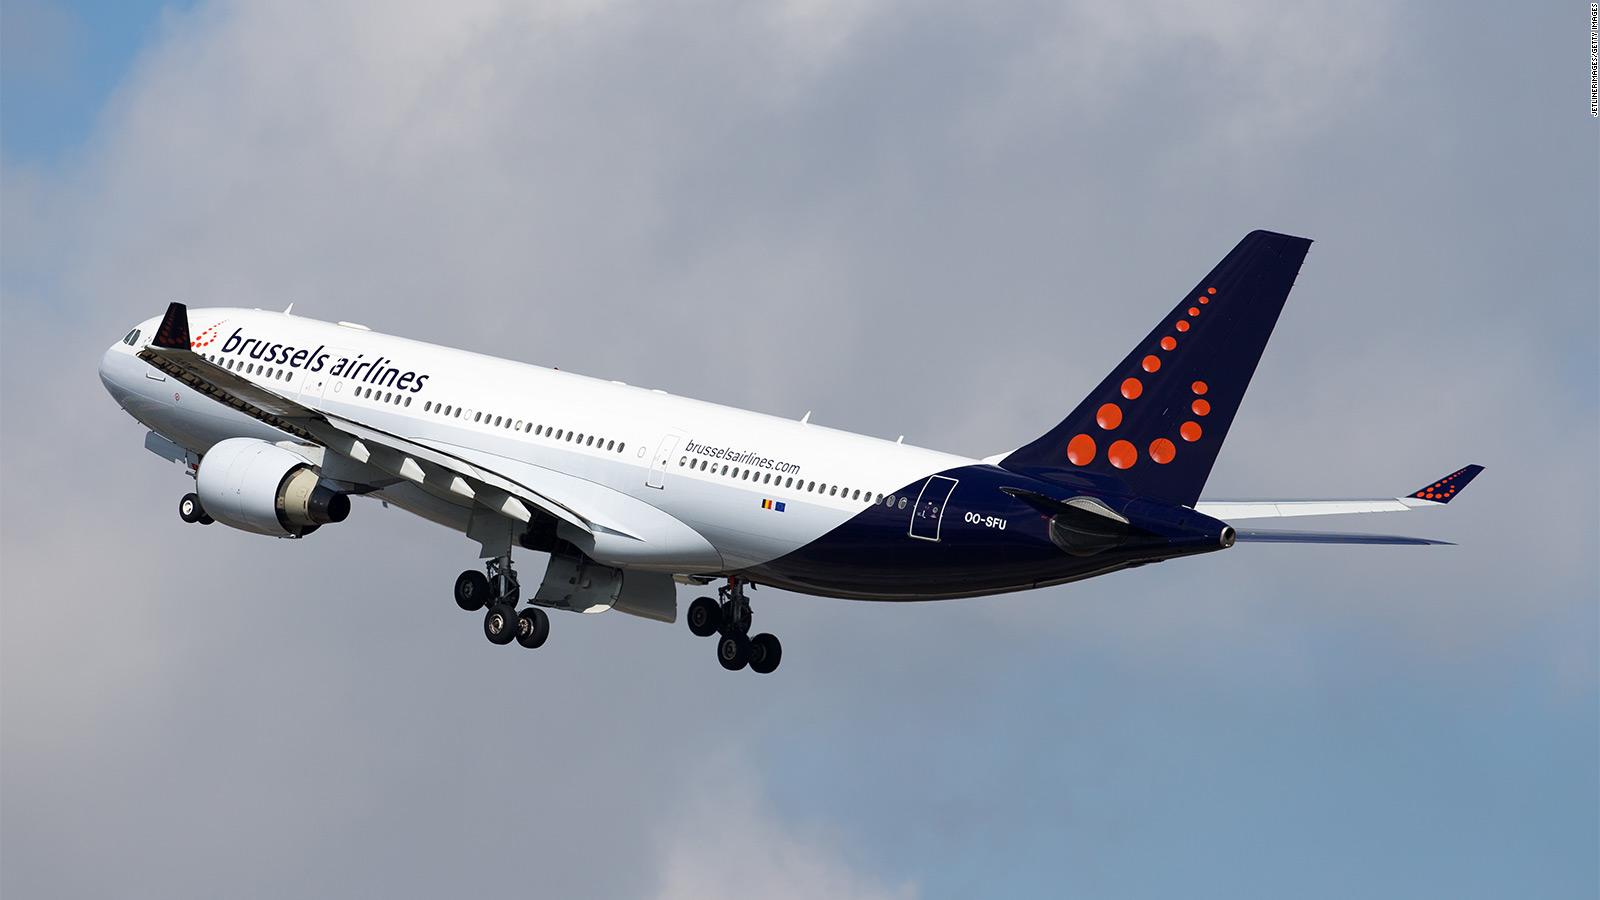 A Brussels Airlines több ezer üres járatot repül csak azért, hogy megtartsa a leszállási időket